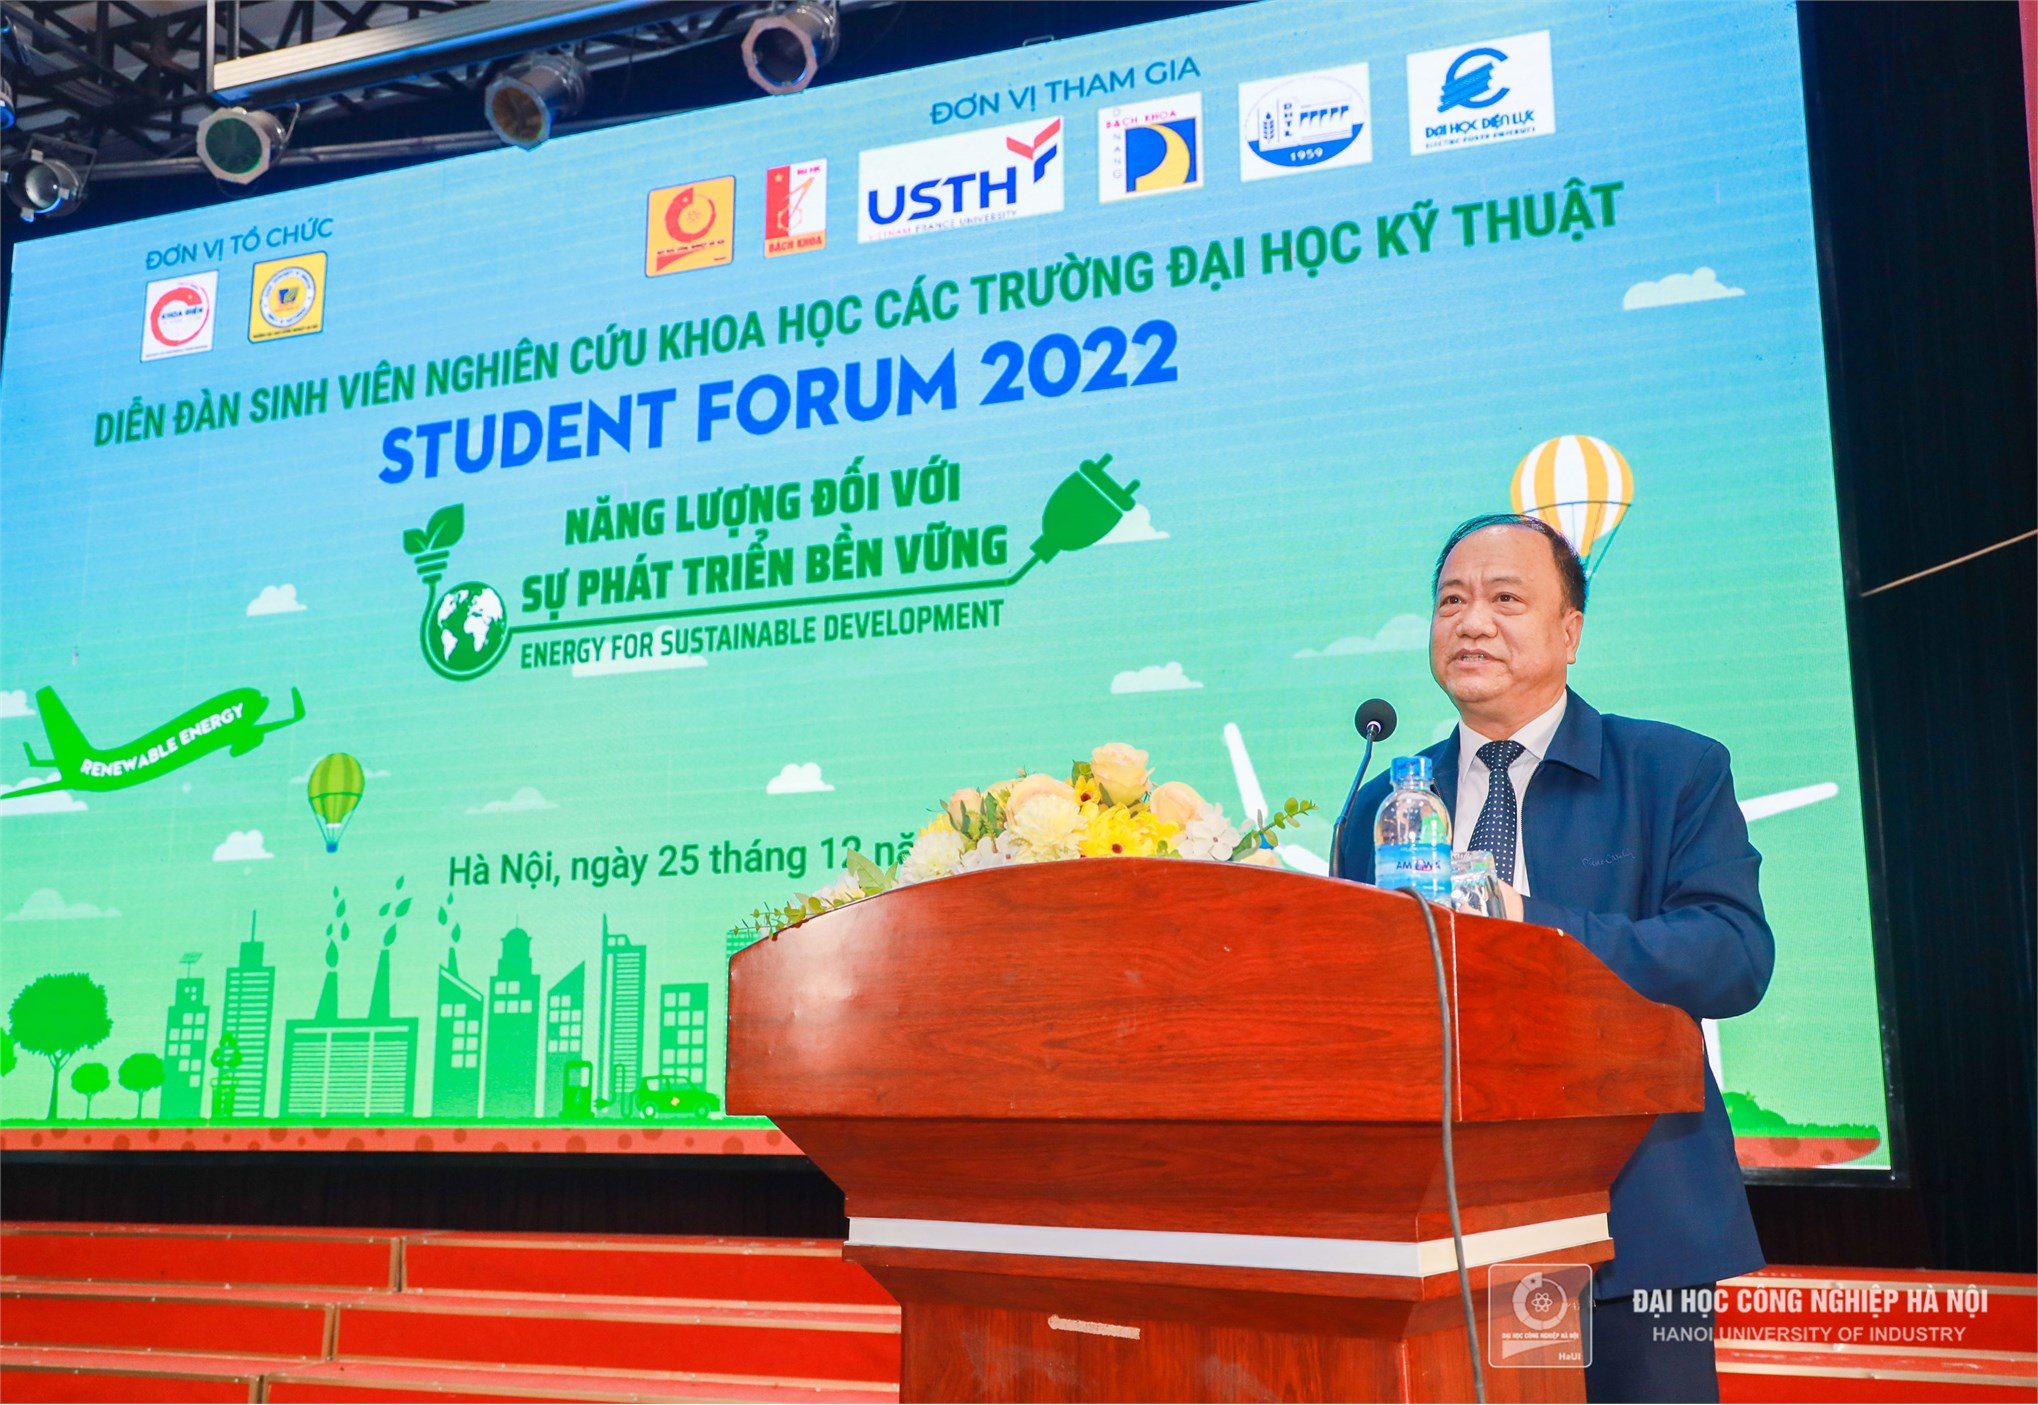 Năng lượng đối với sự phát triển bền vững – Student Foum 2022